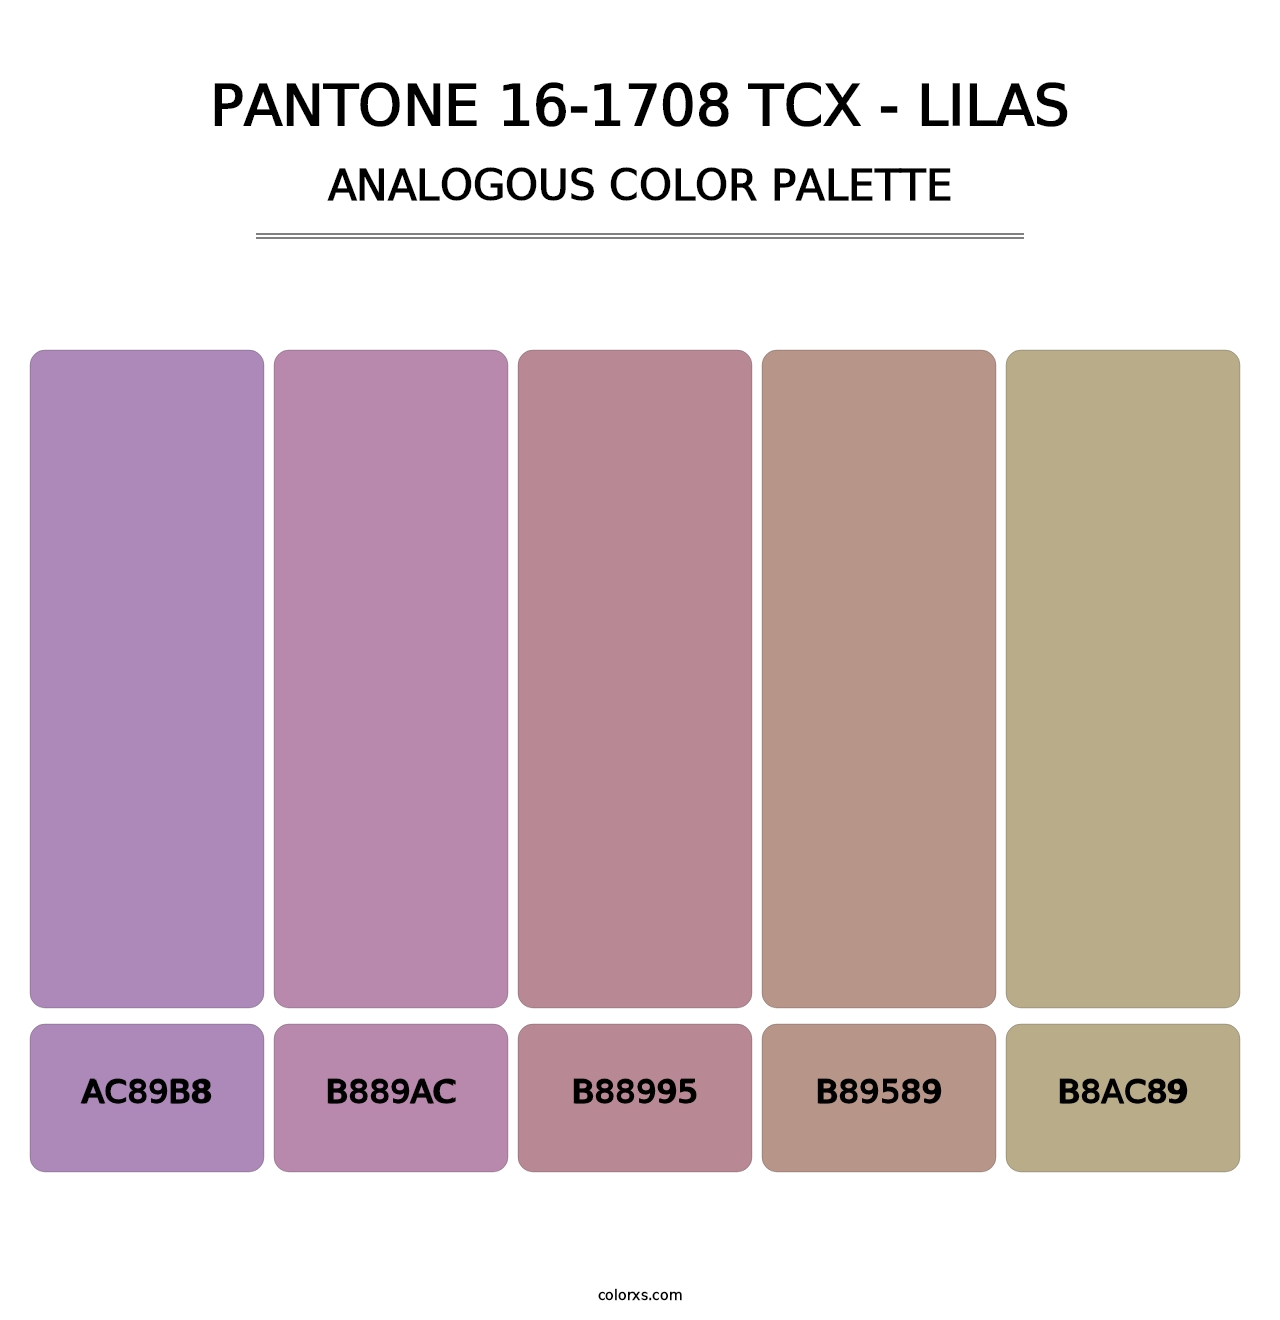 PANTONE 16-1708 TCX - Lilas - Analogous Color Palette